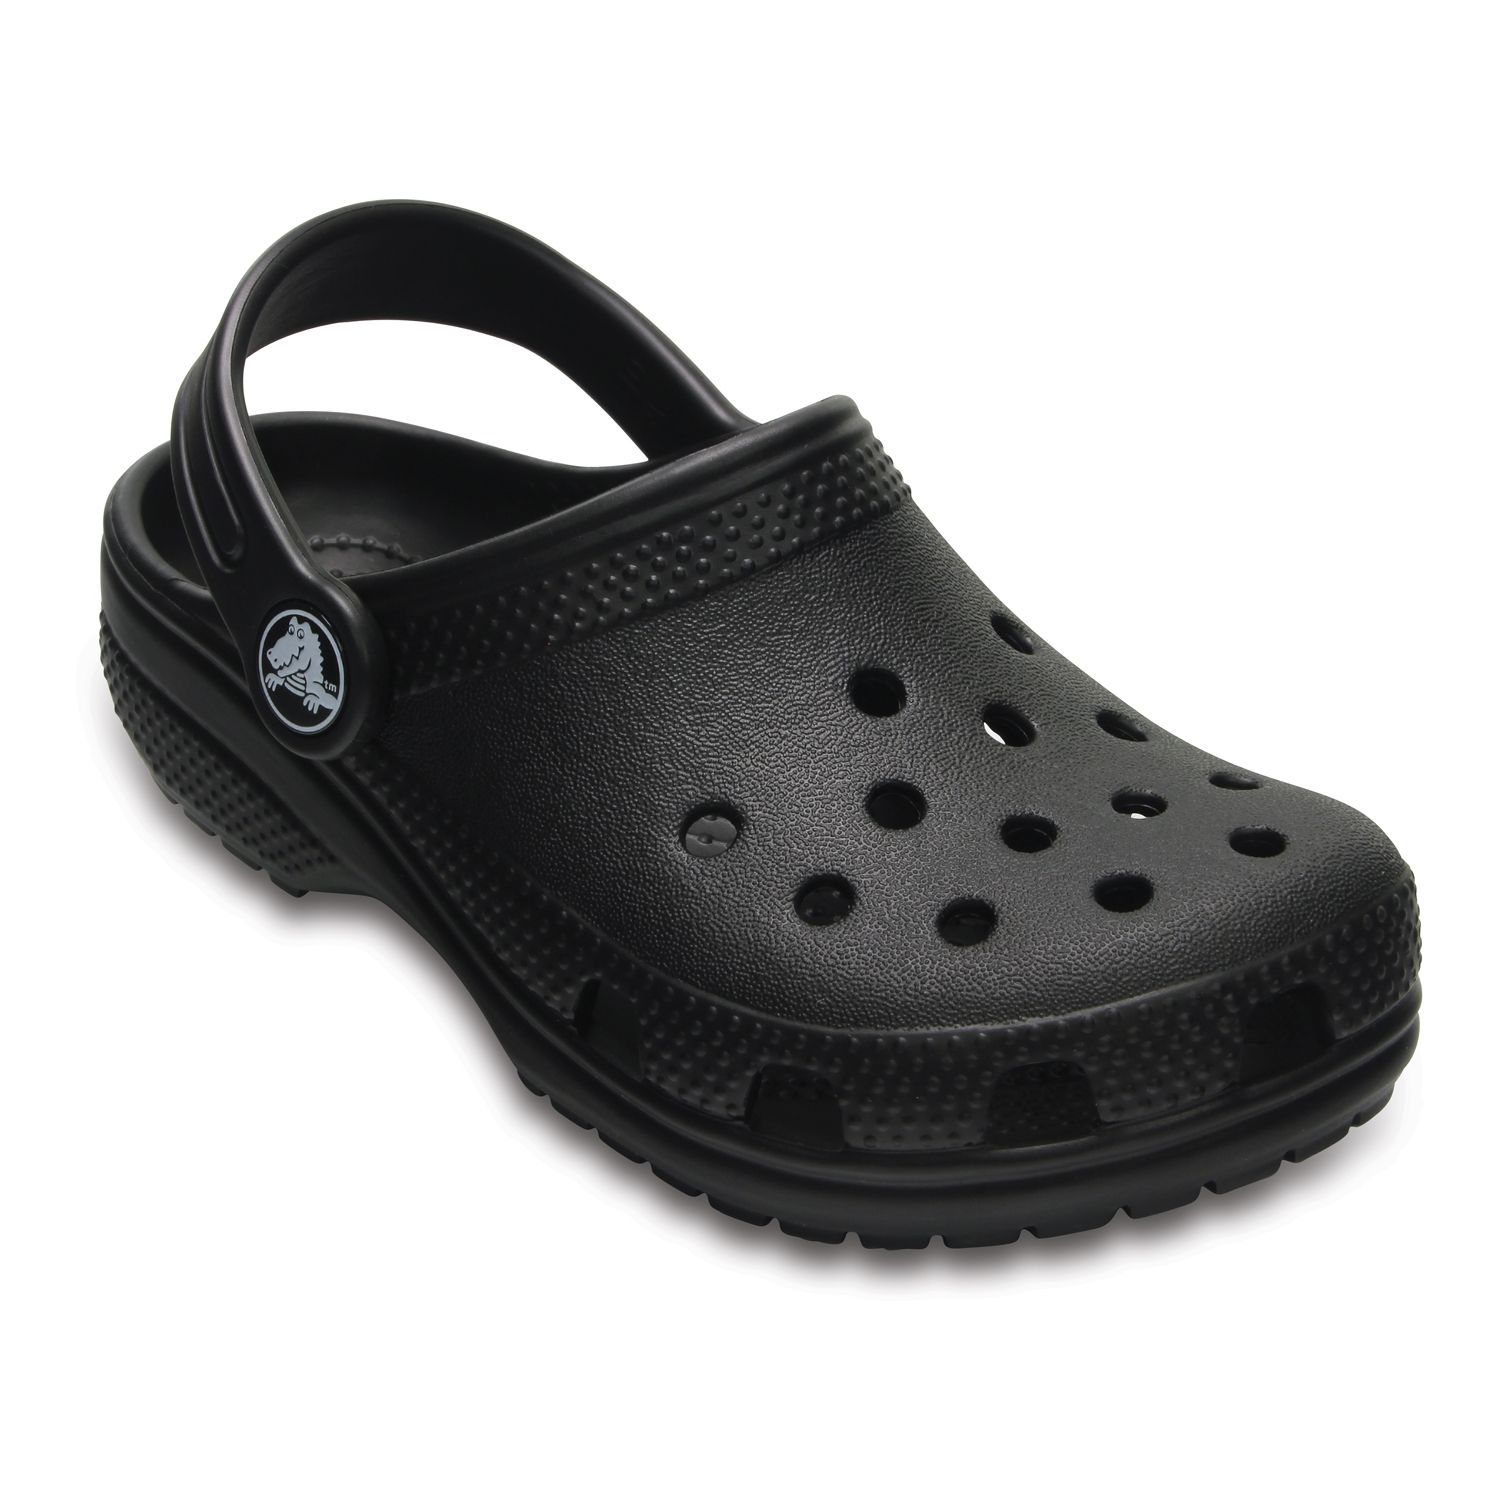 size 4 kids crocs